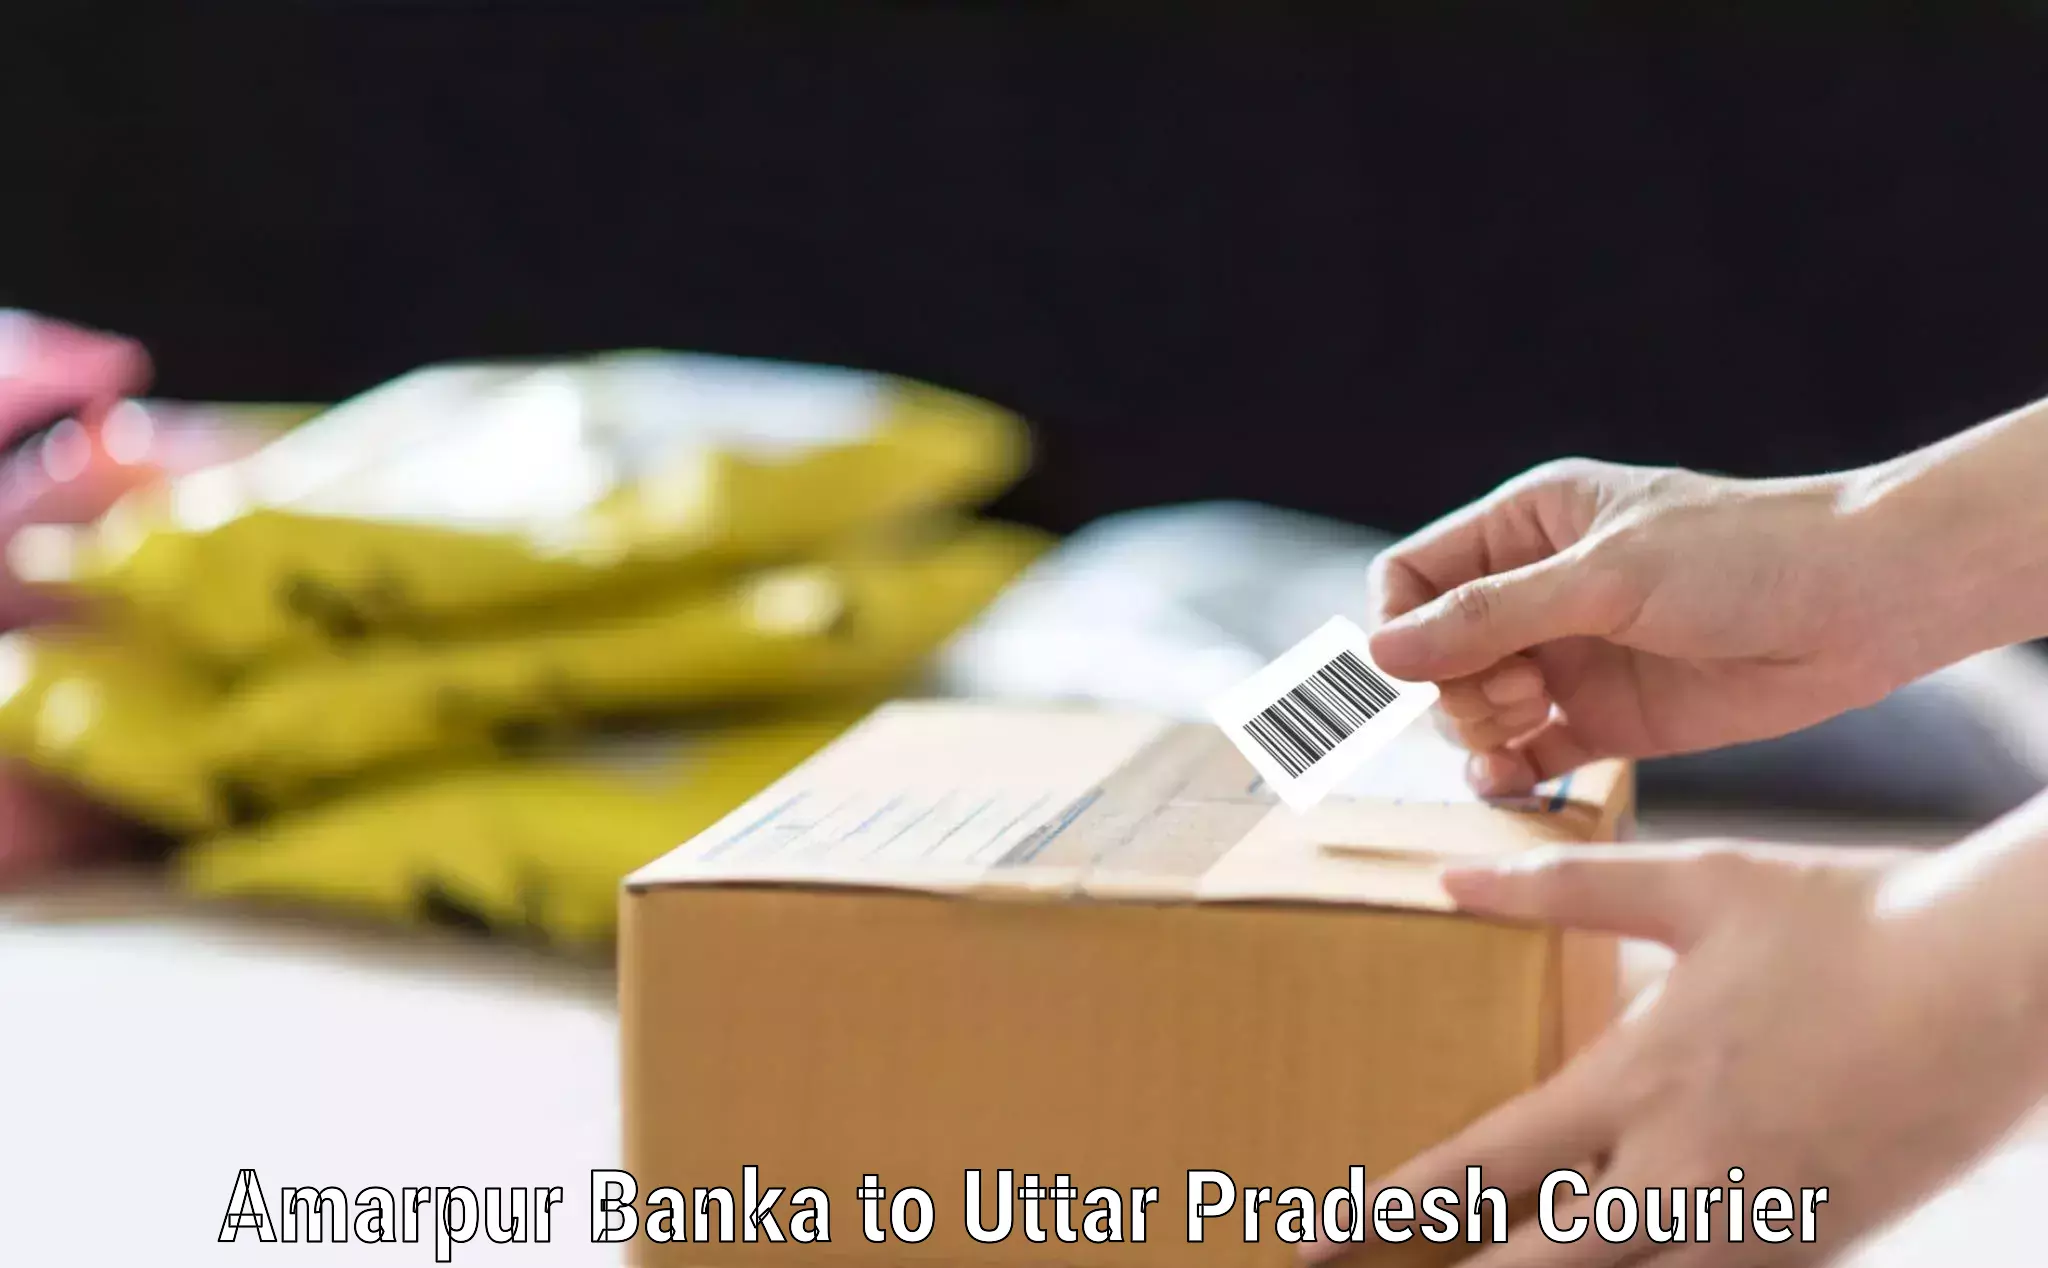 Reliable baggage delivery Amarpur Banka to Uttar Pradesh